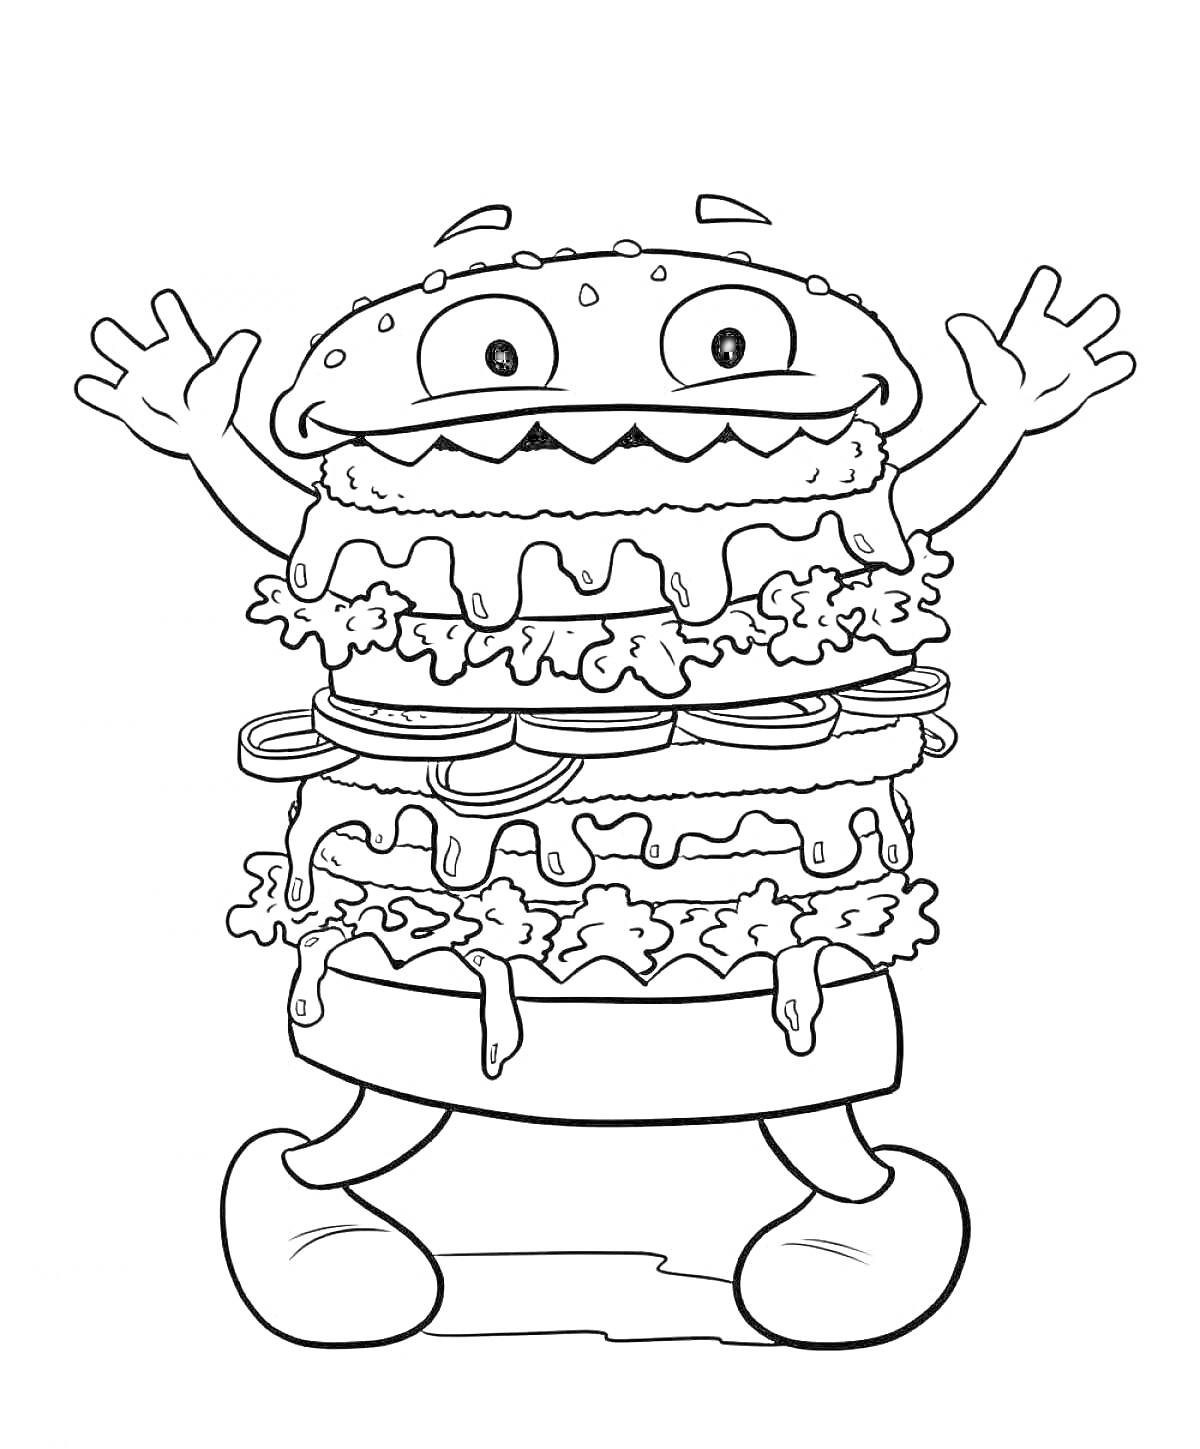 Веселый многослойный бургер с руками и ногами, с овощами, соусом, сыром и семенами